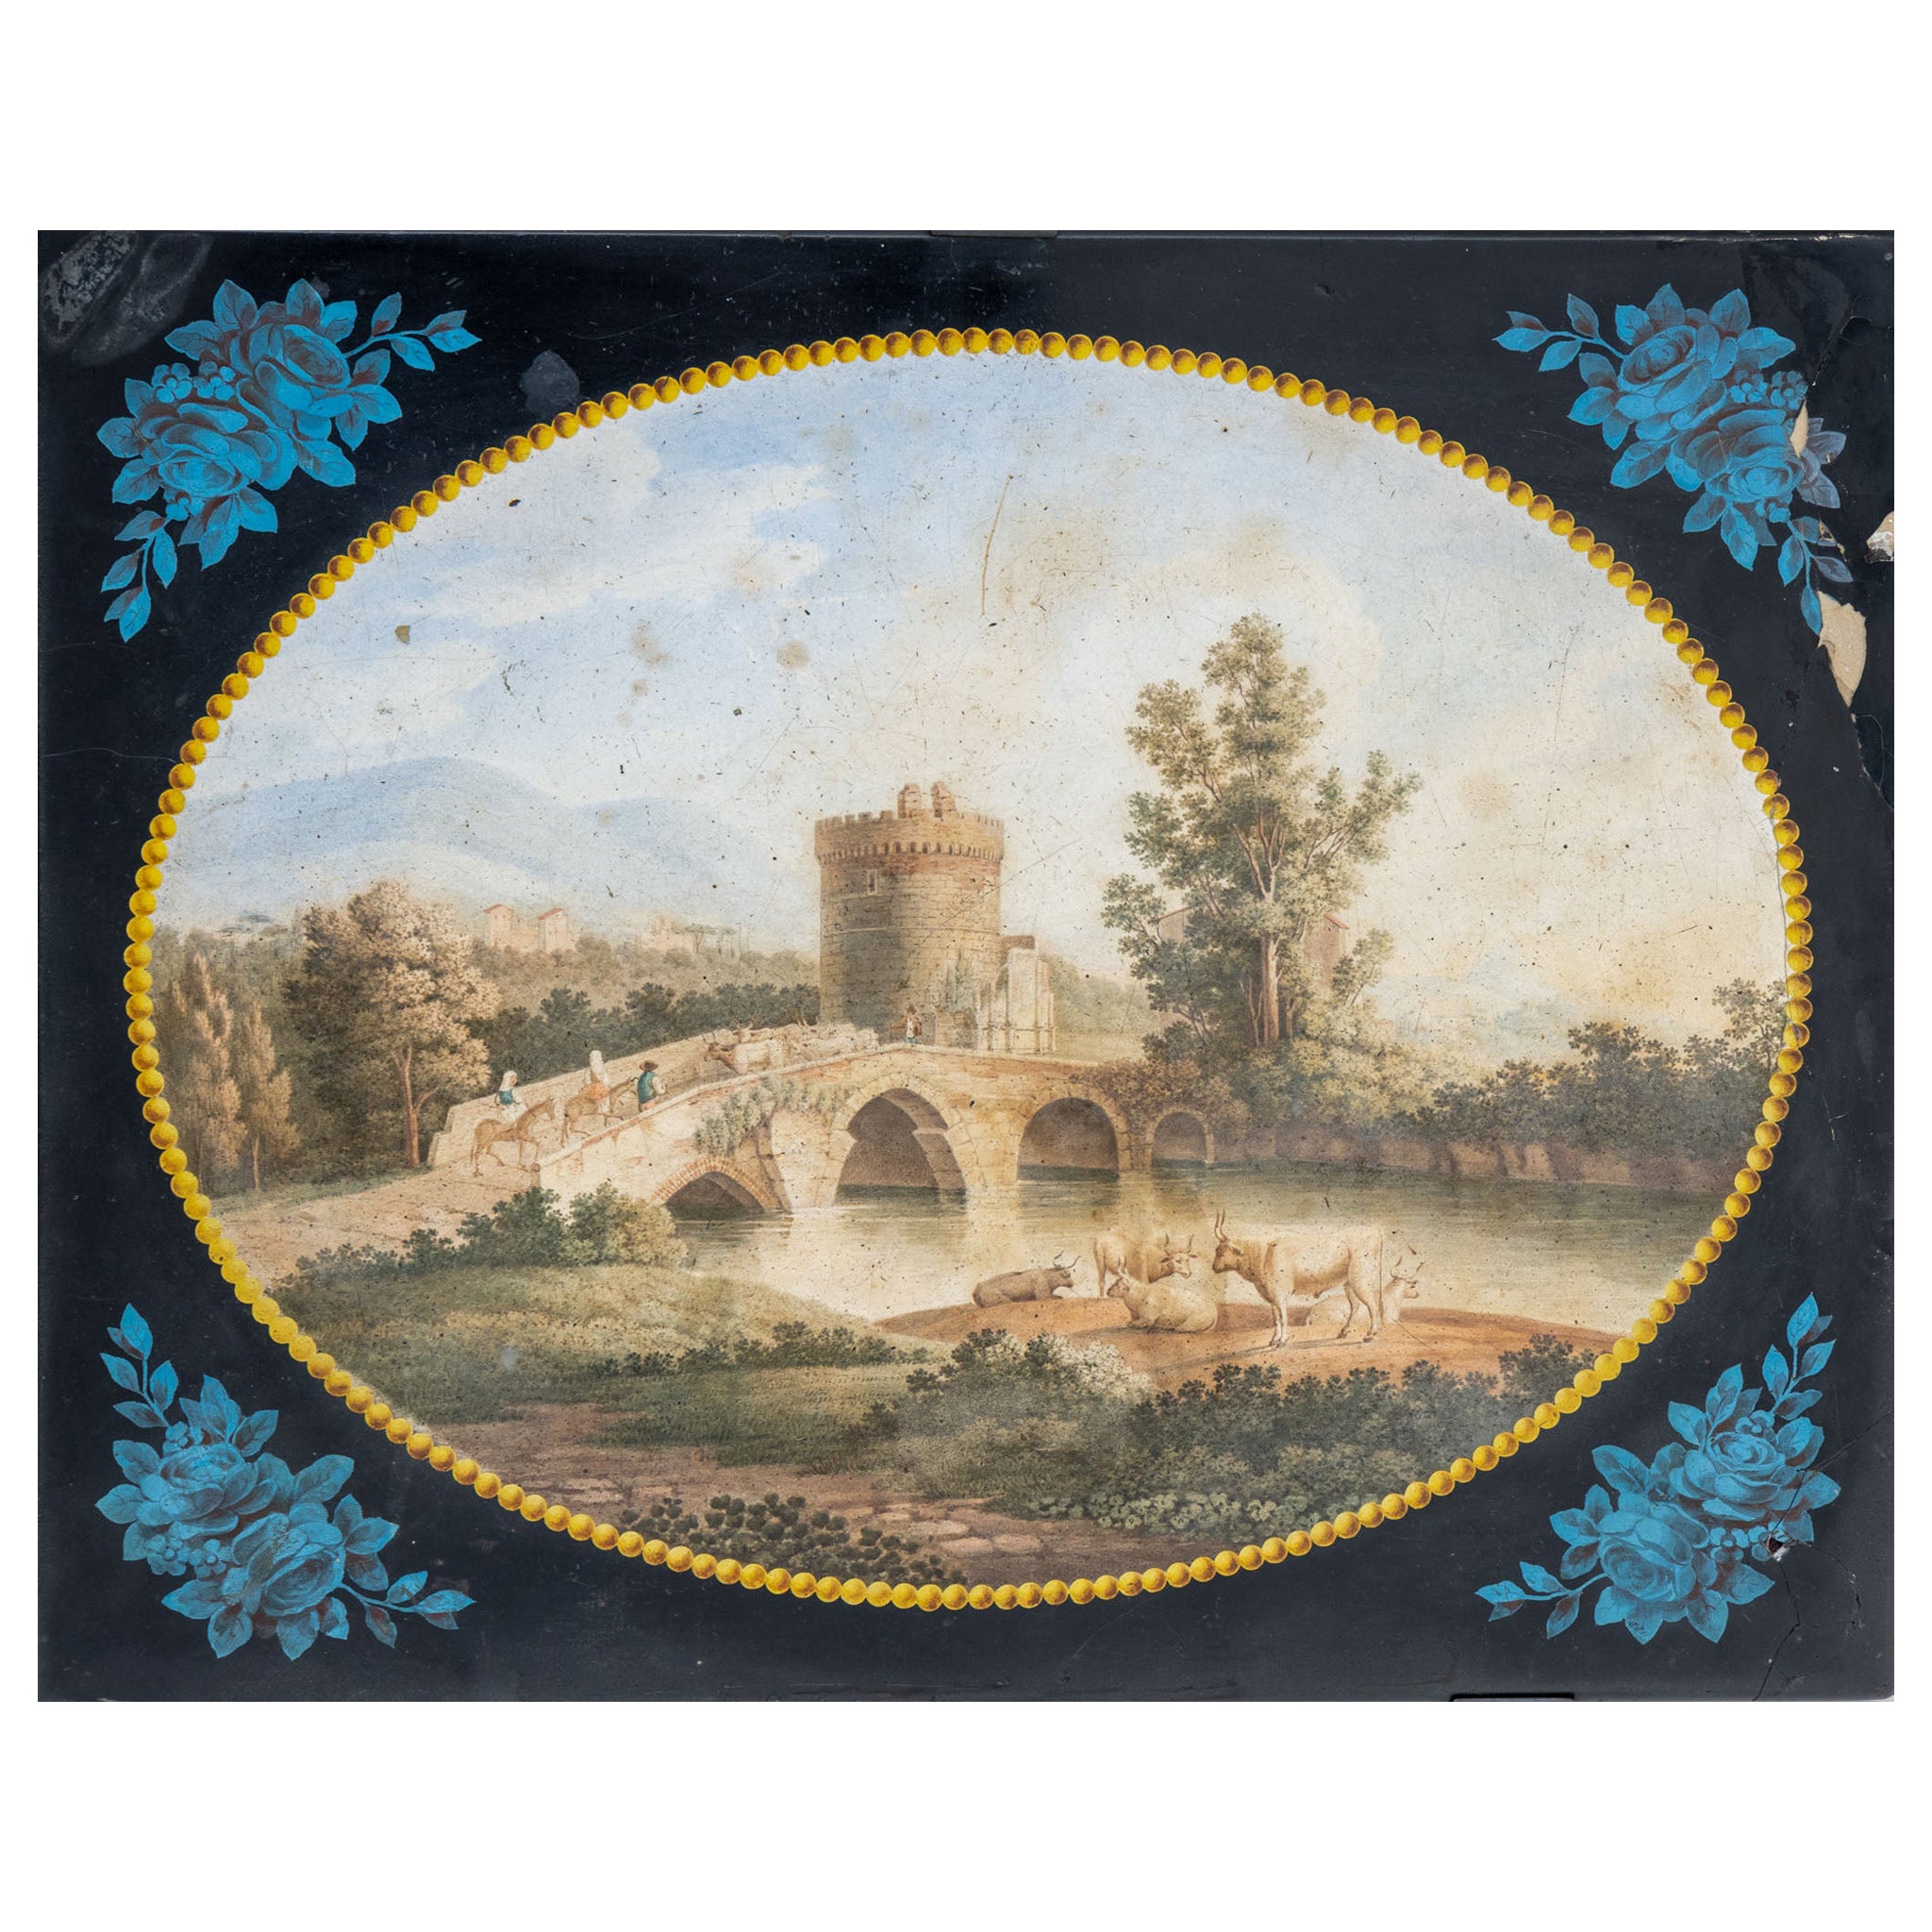 Scagliola Plate After Pietro Della Valle, Late 19th Century